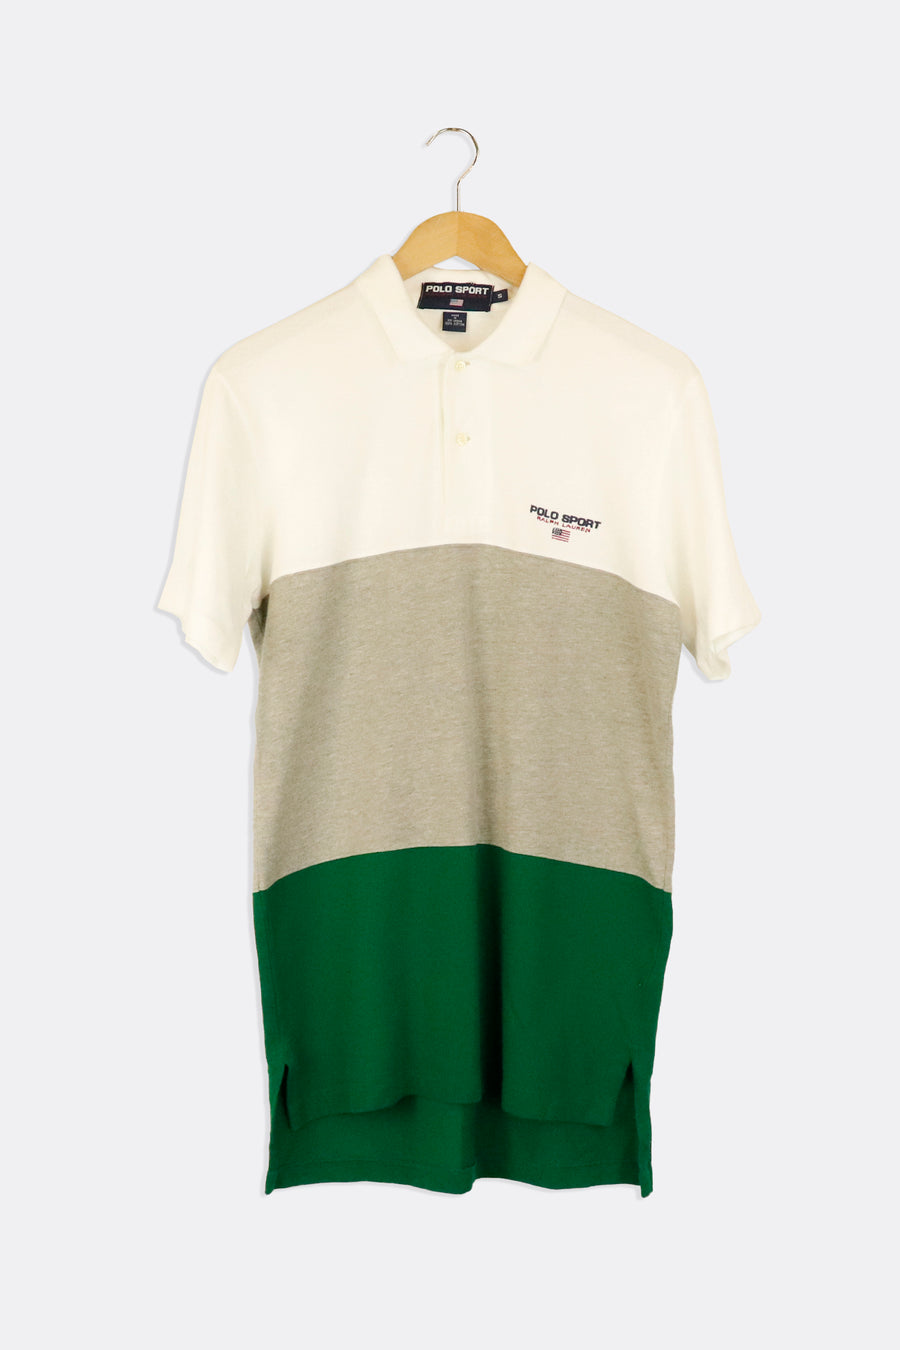 Vintage Polo Ralph Lauren Collared Colour Block Button Up T Shirt Sz S